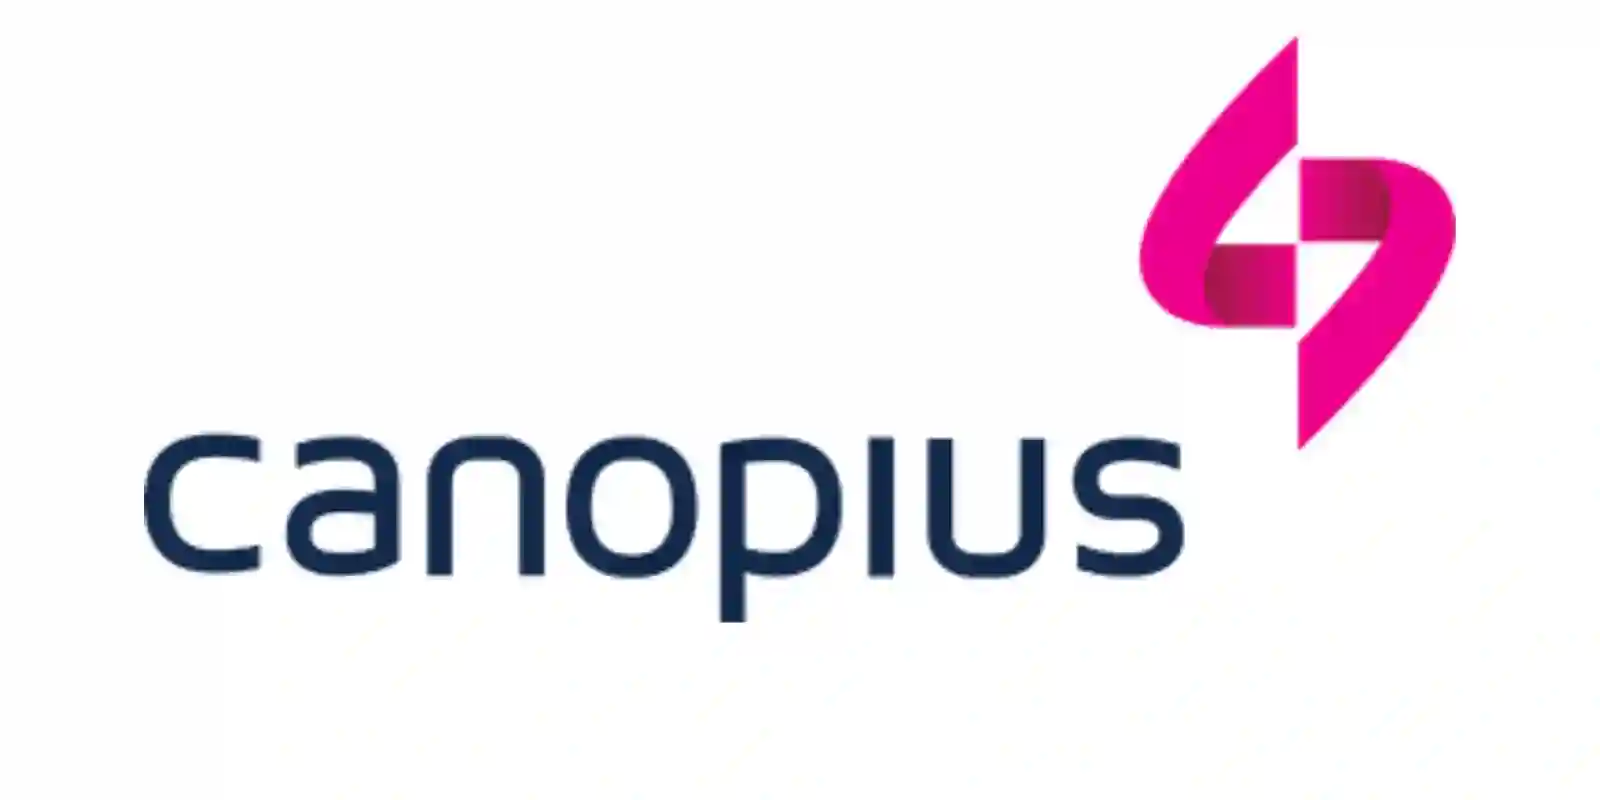 Canopius logo